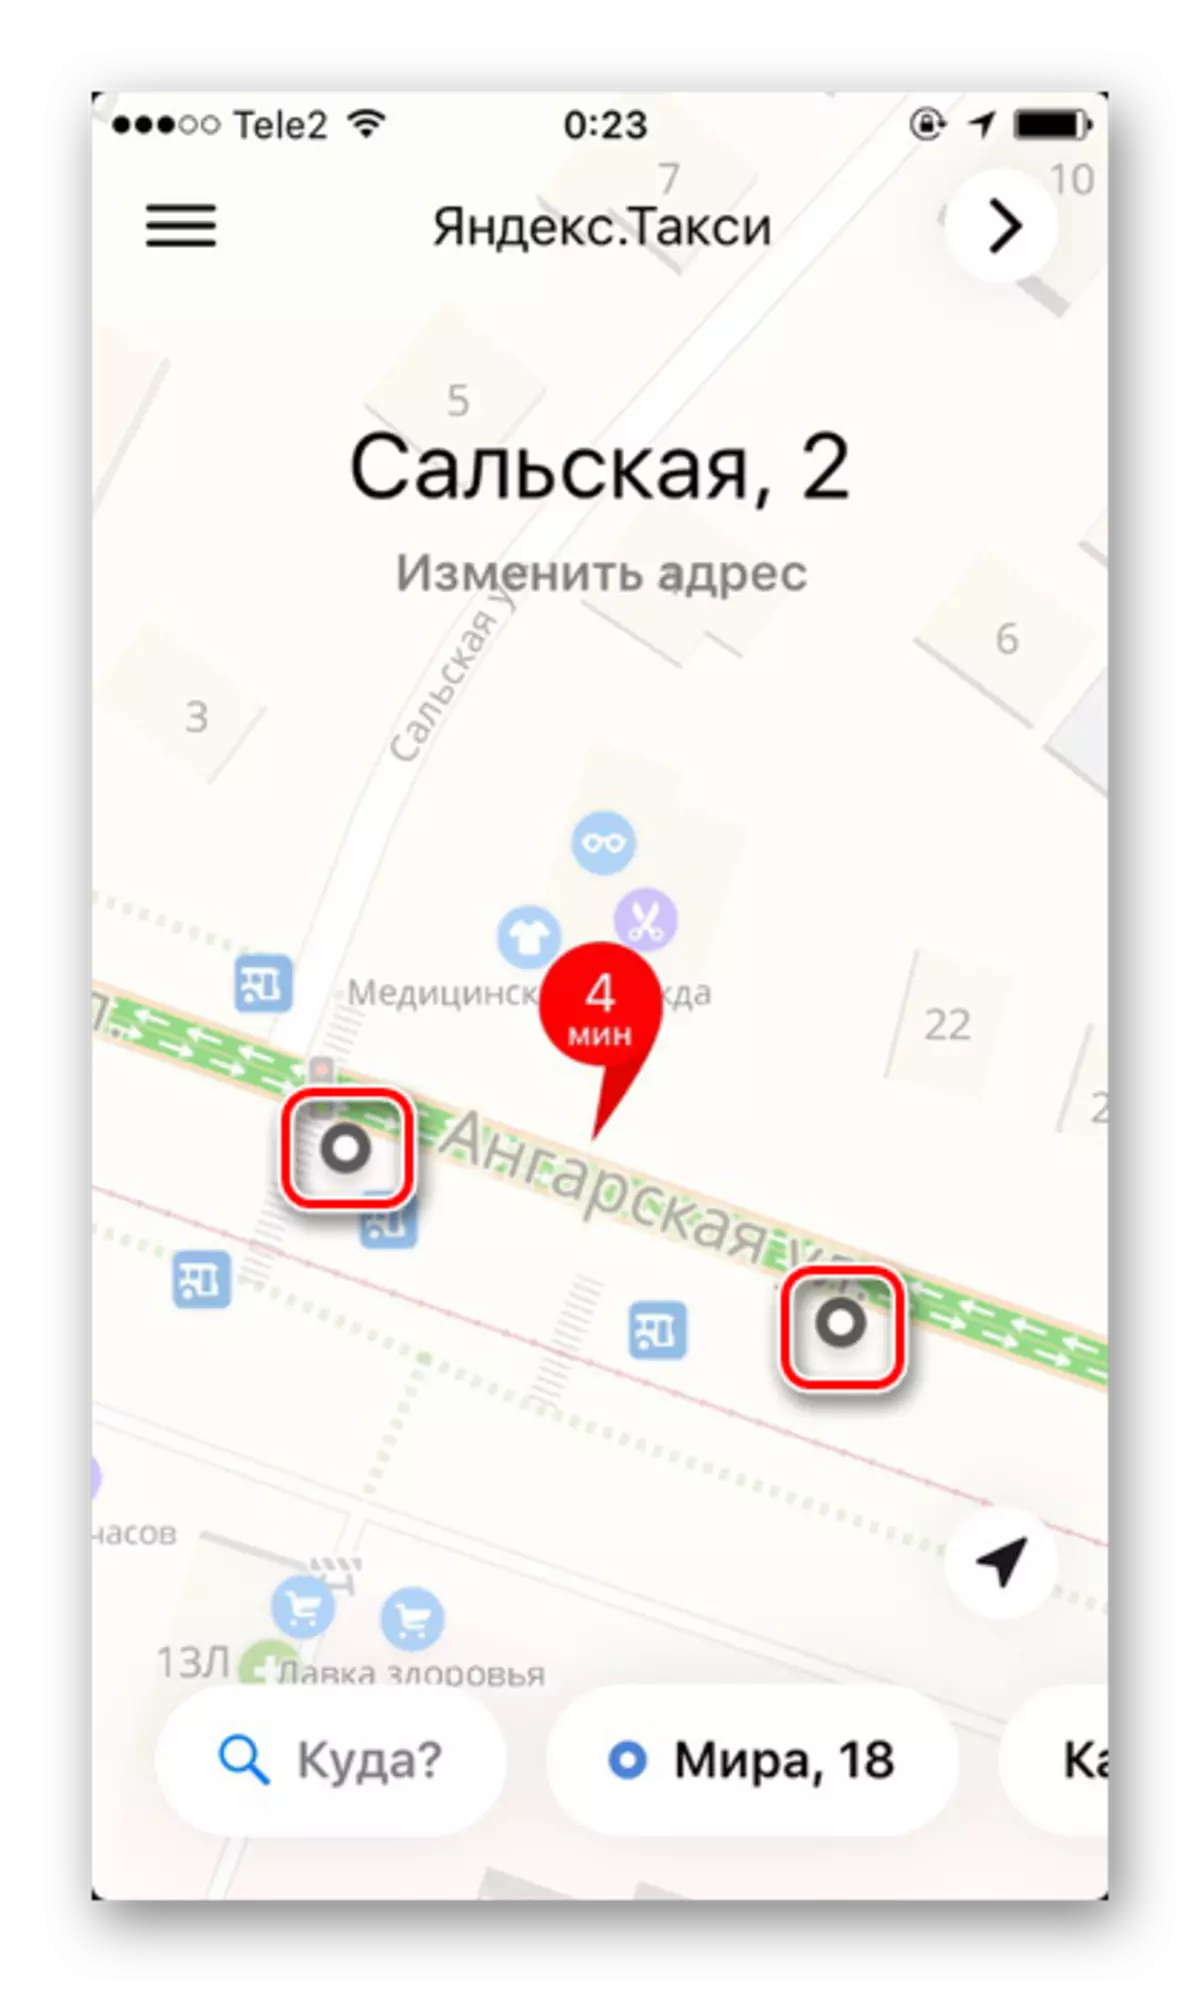 Một số điểm nhất định trên bản đồ để giảm giá của một chuyến đi trong ứng dụng Yandex.Taxi trên iPhone